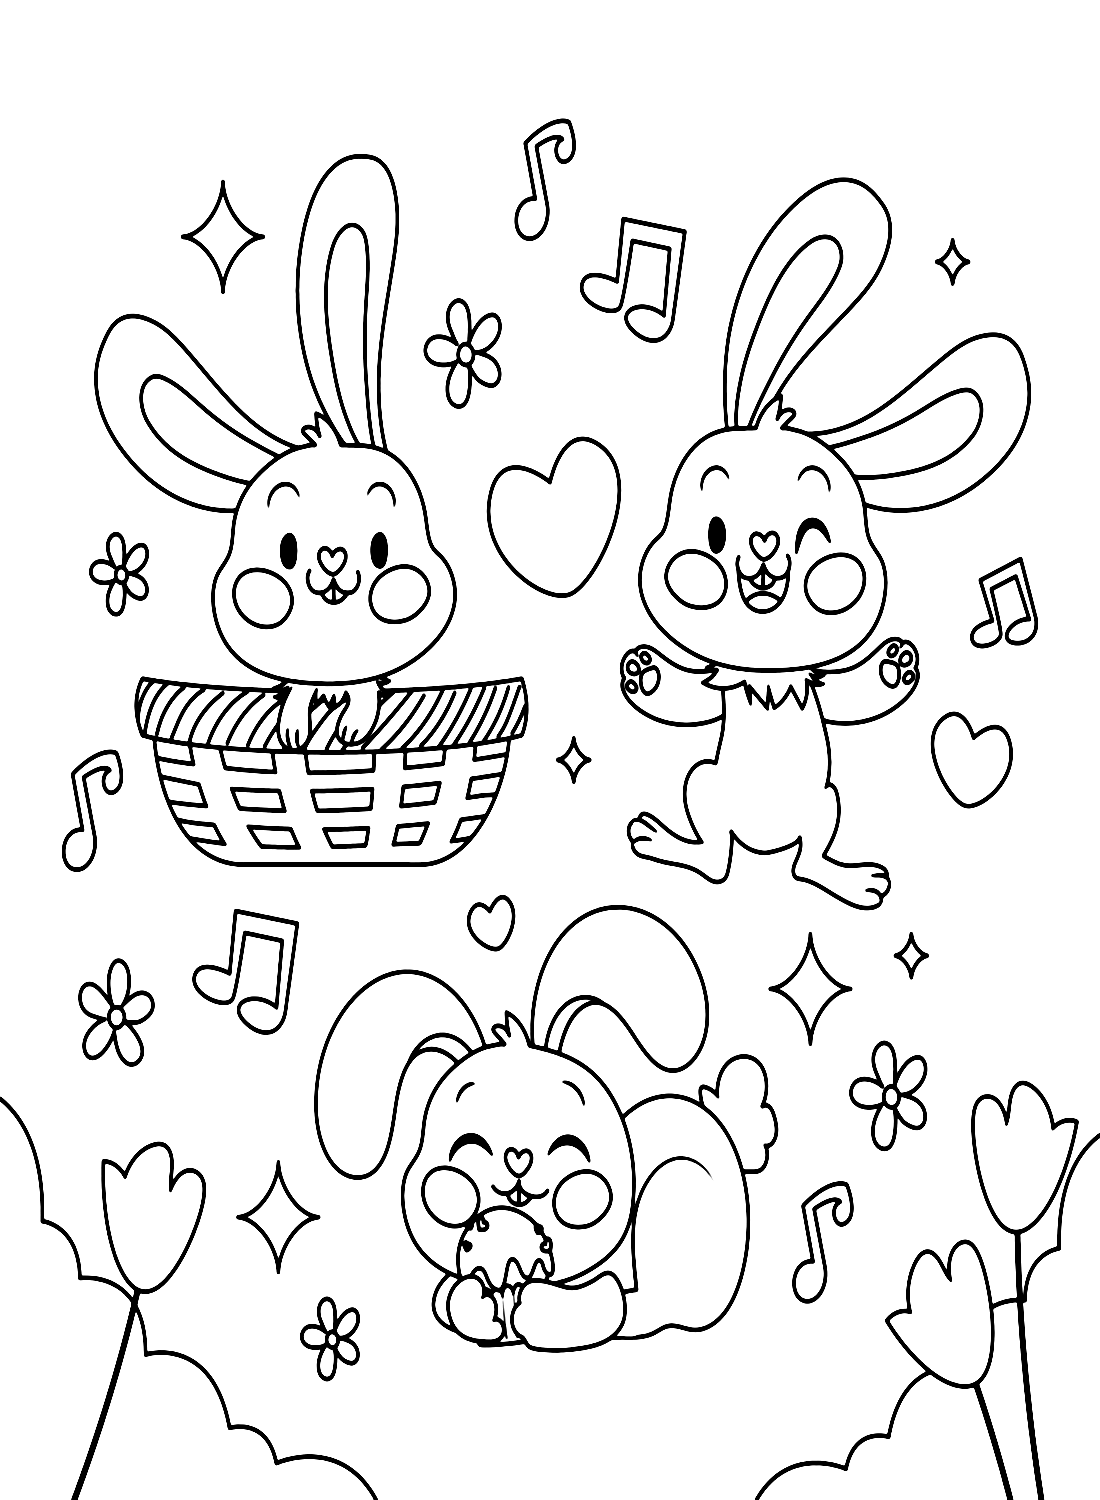 三只兔子享受兔子的音乐